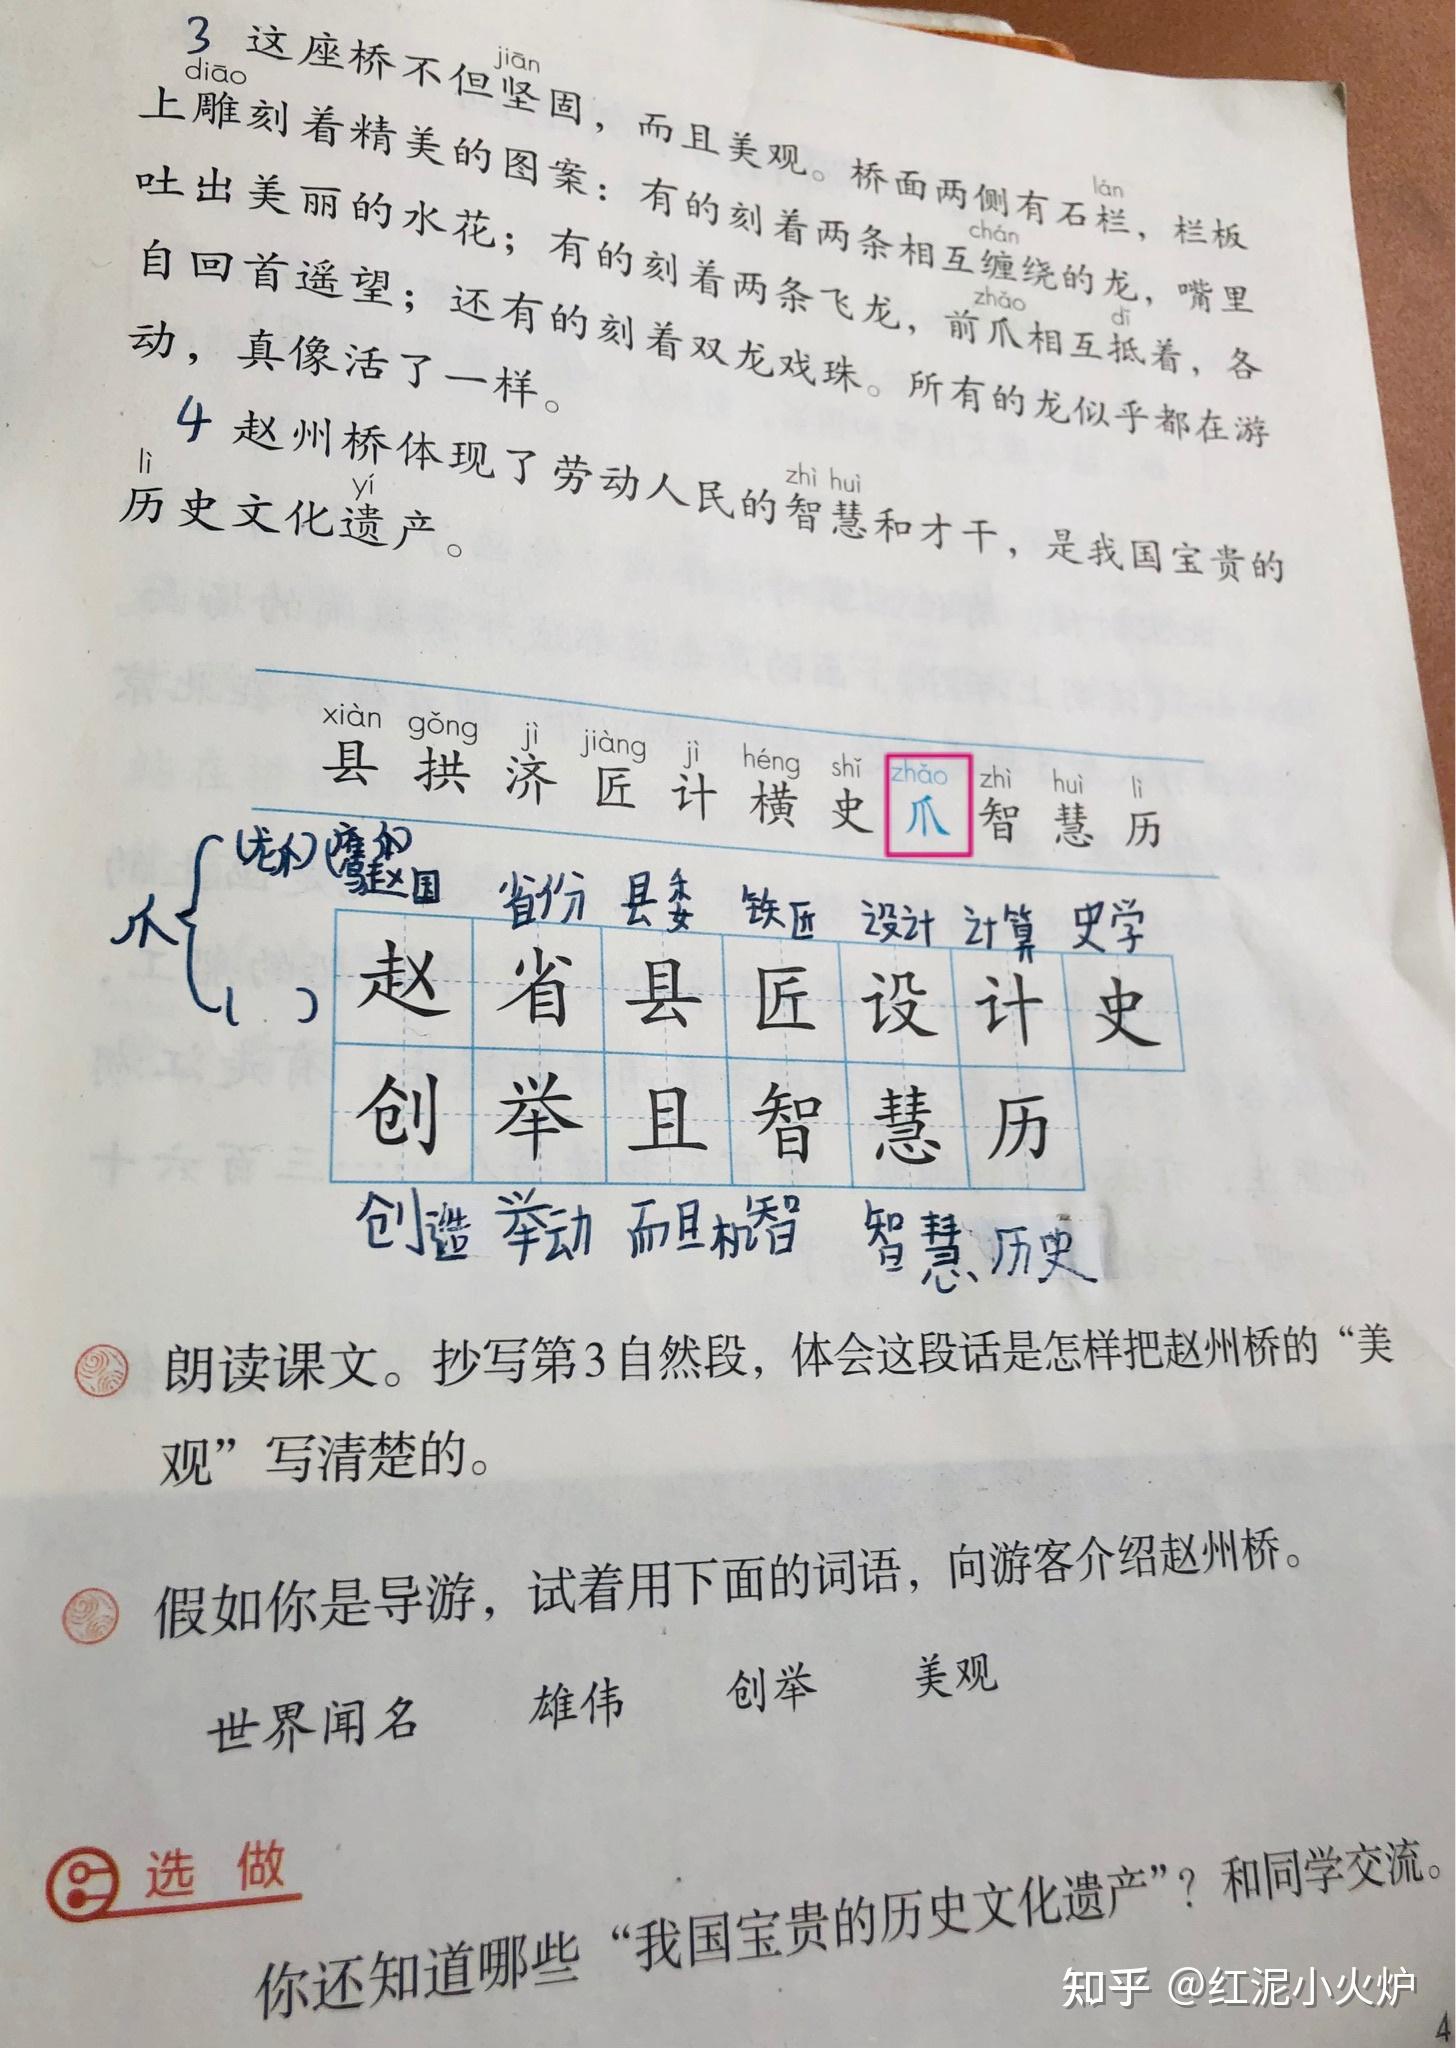 爪什么时候读zhua3,什么时候读zhao3? 